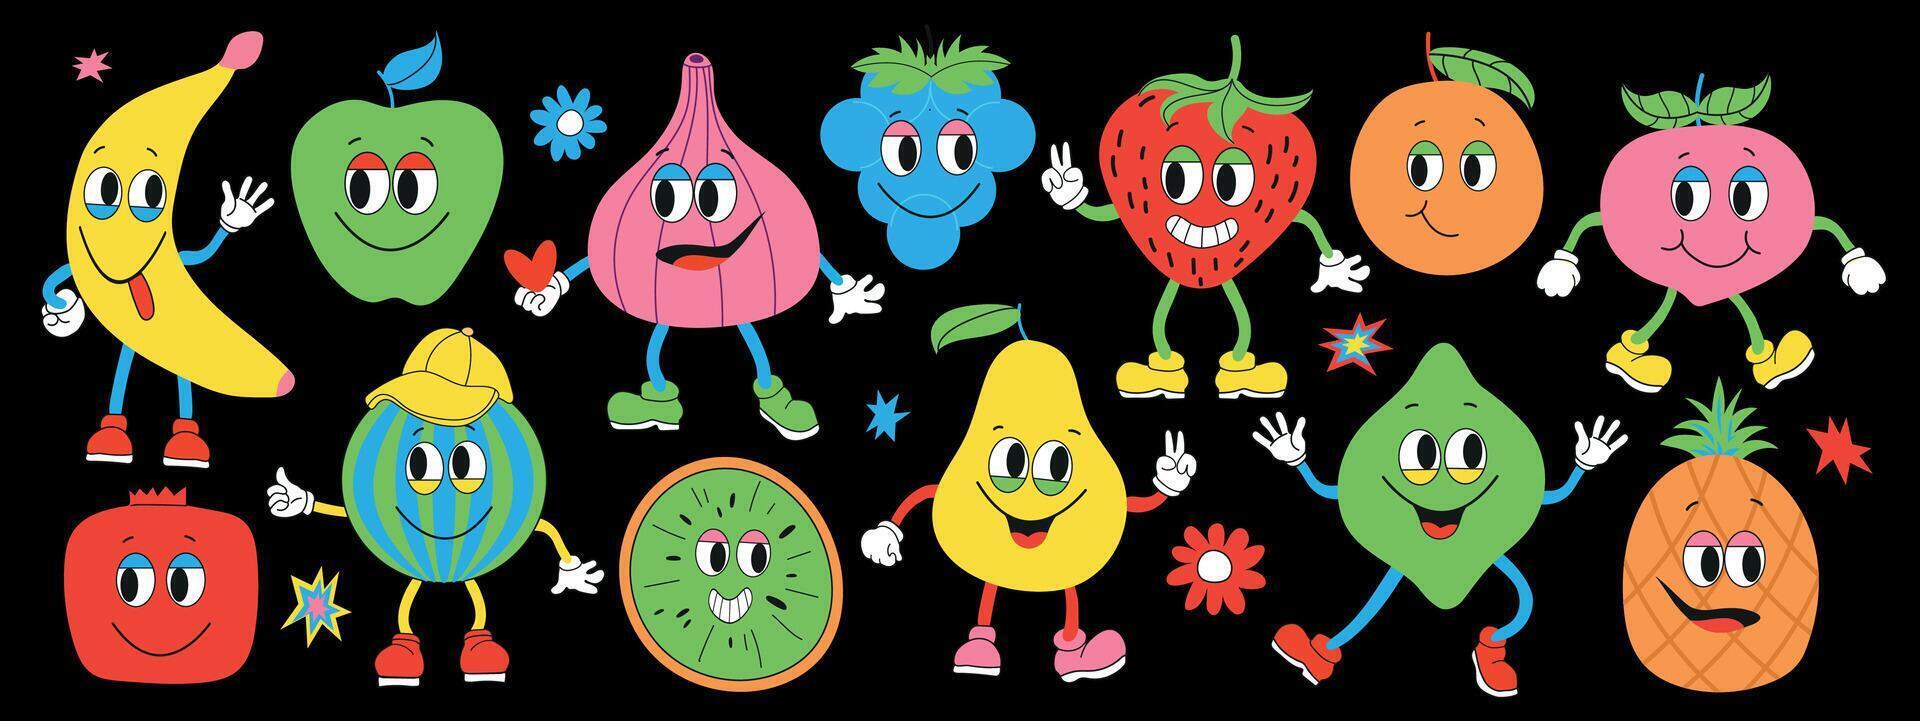 maravilloso frutas colocar. Fruta retro dibujos animados caracteres en un oscuro fondo.mano dibujar gracioso retro Clásico de moda estilo frutas dibujos animados personaje.groovy verano vector ilustración. frutas jugoso pegatina embalar.